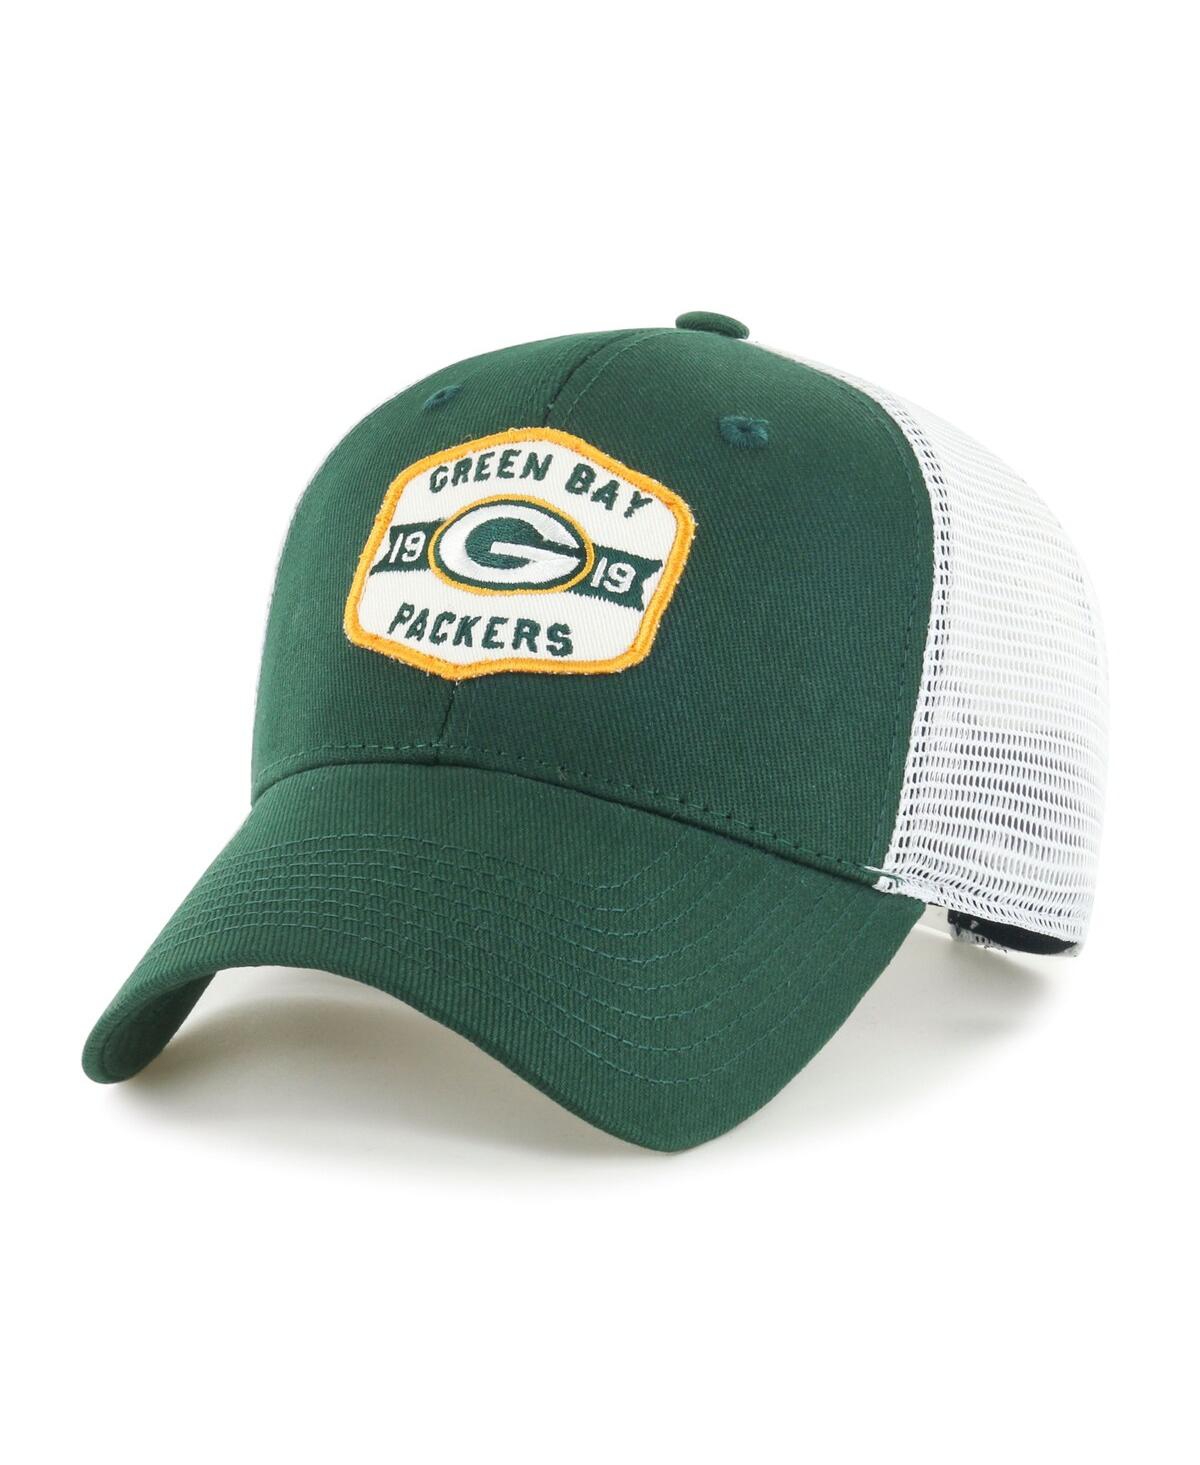 Men's Green, White Green Bay Packers Gannon Snapback Hat - Green, White